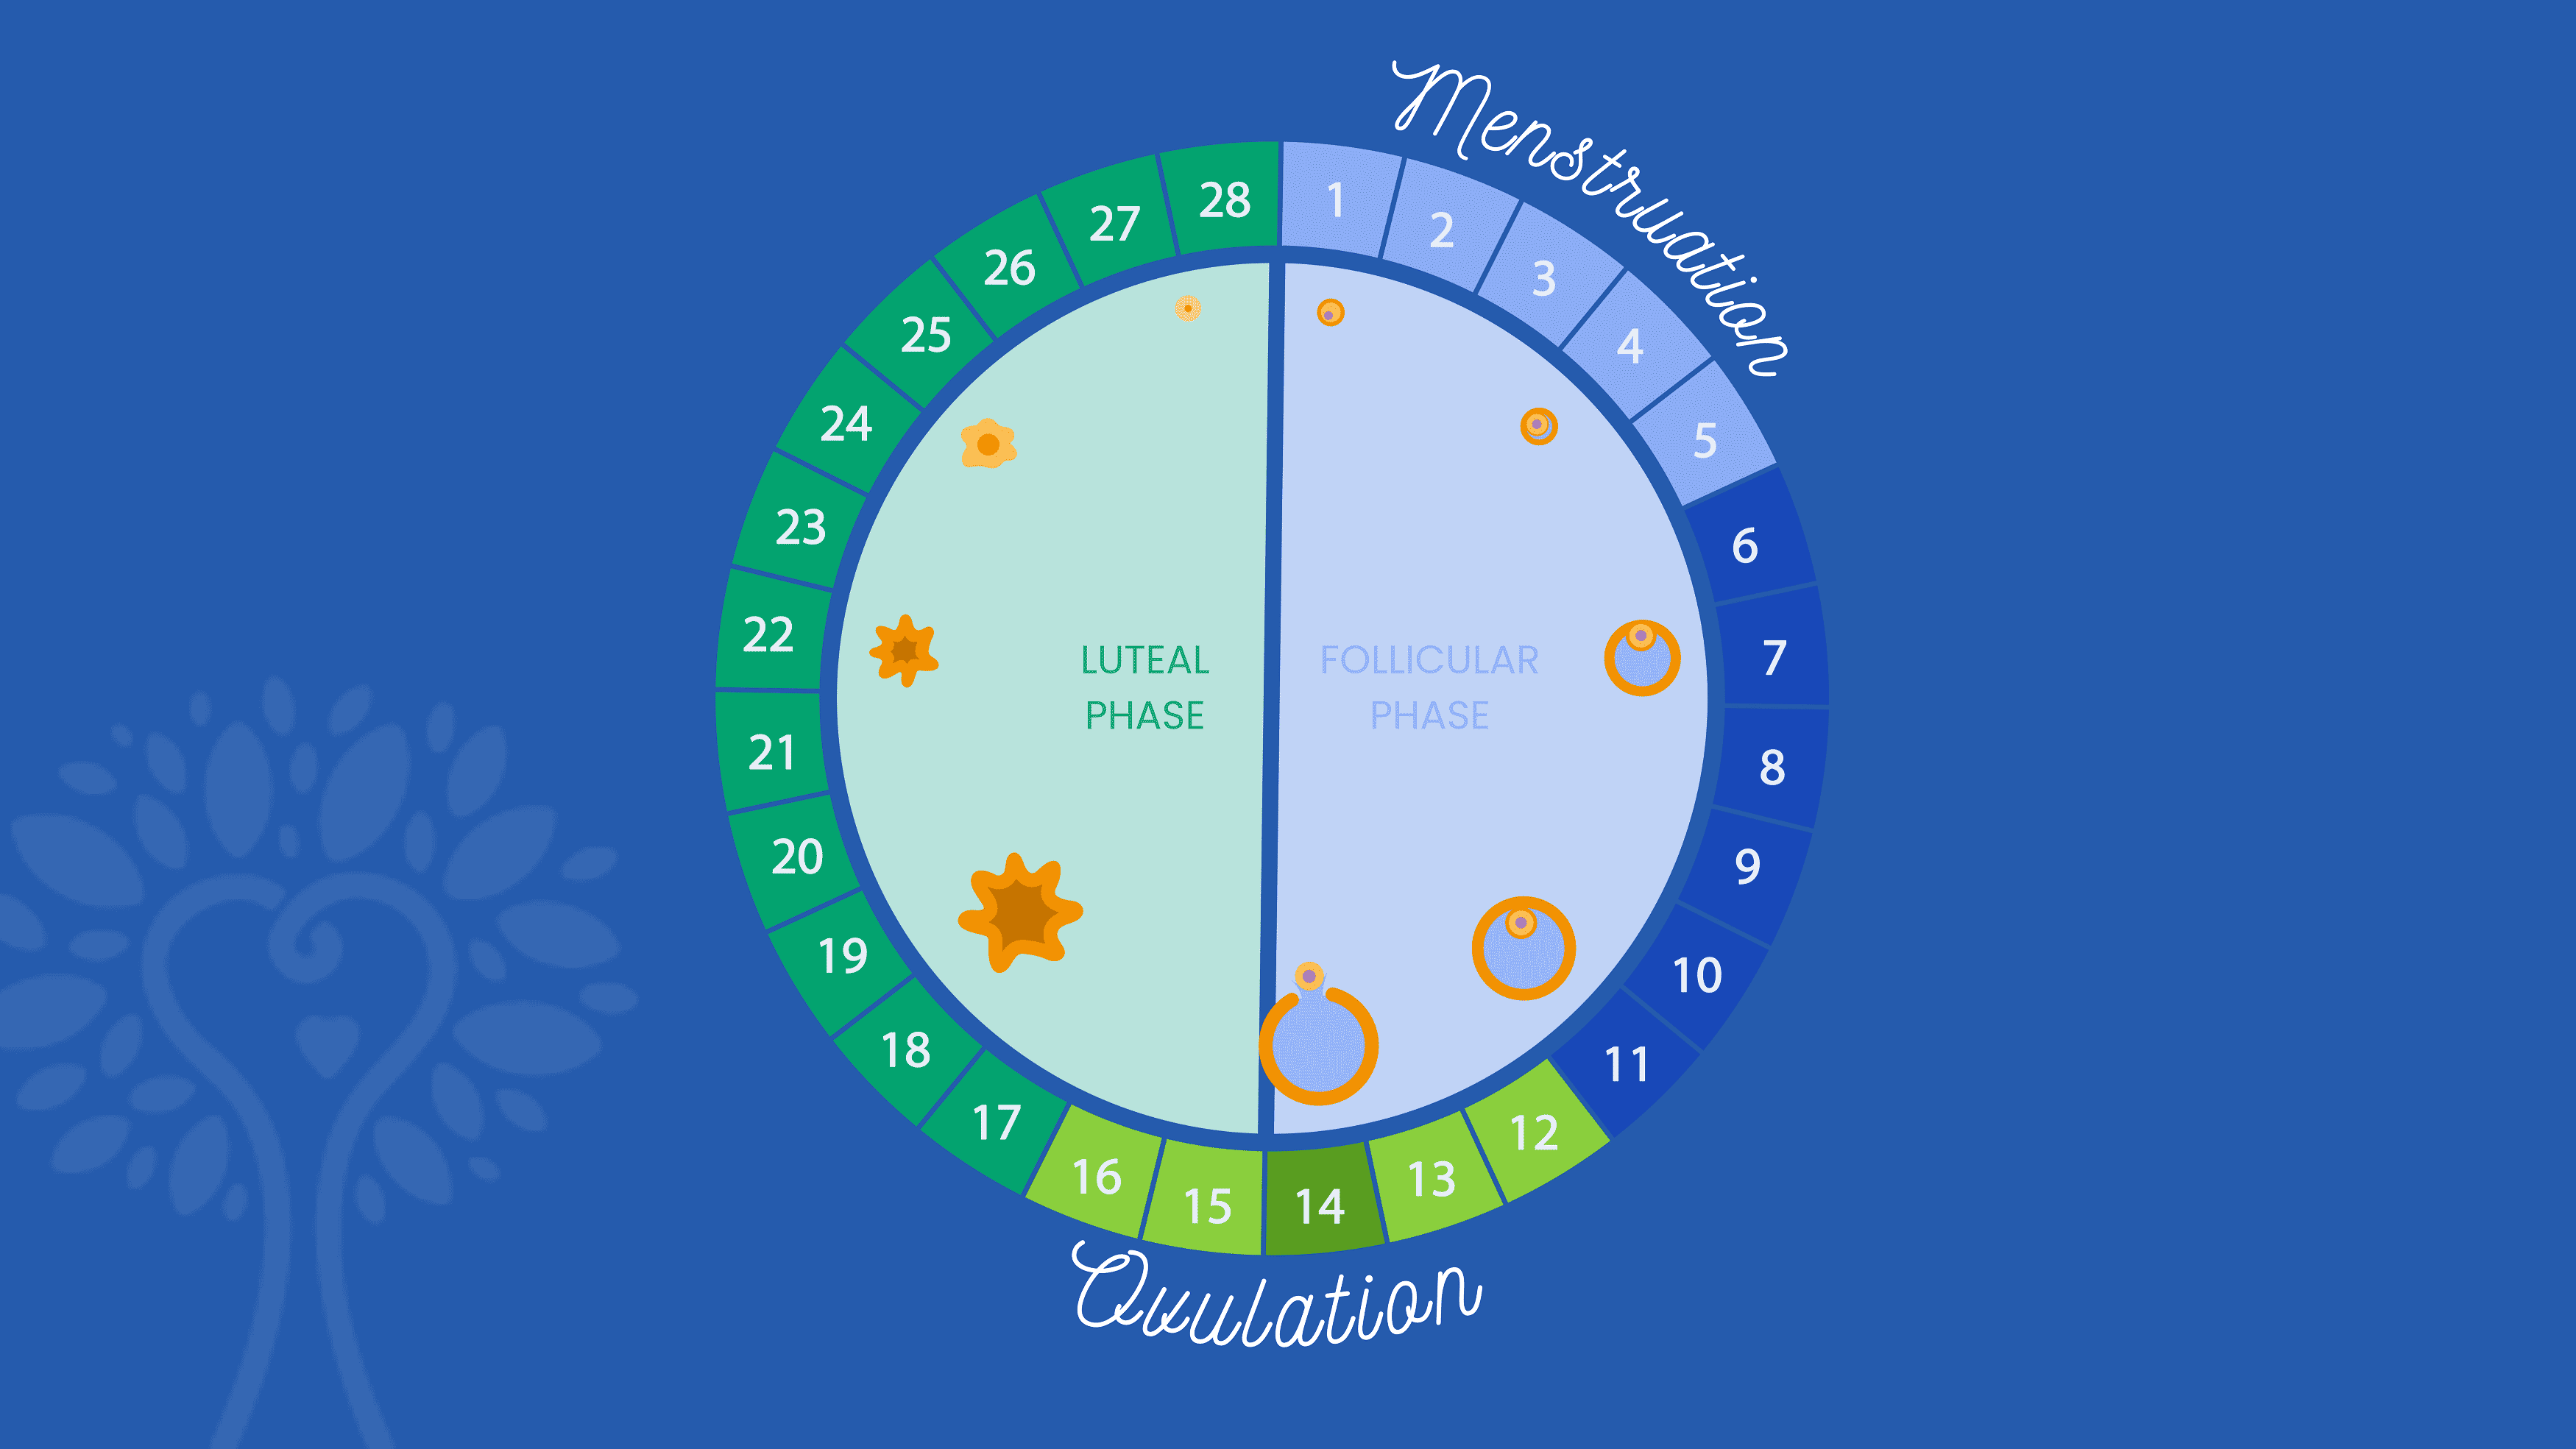 Fundo azul escuro com calendário circular de fertilização in vitro mostrando os 28 dias de um ciclo menstrual com a palavra “Menstruação” abrangendo os dias 1 a 5 e a palavra “Ovulação” abrangendo os dias 12 a 16. Os números são coloridos em diferentes tons de azul e verde de acordo com sua fase.